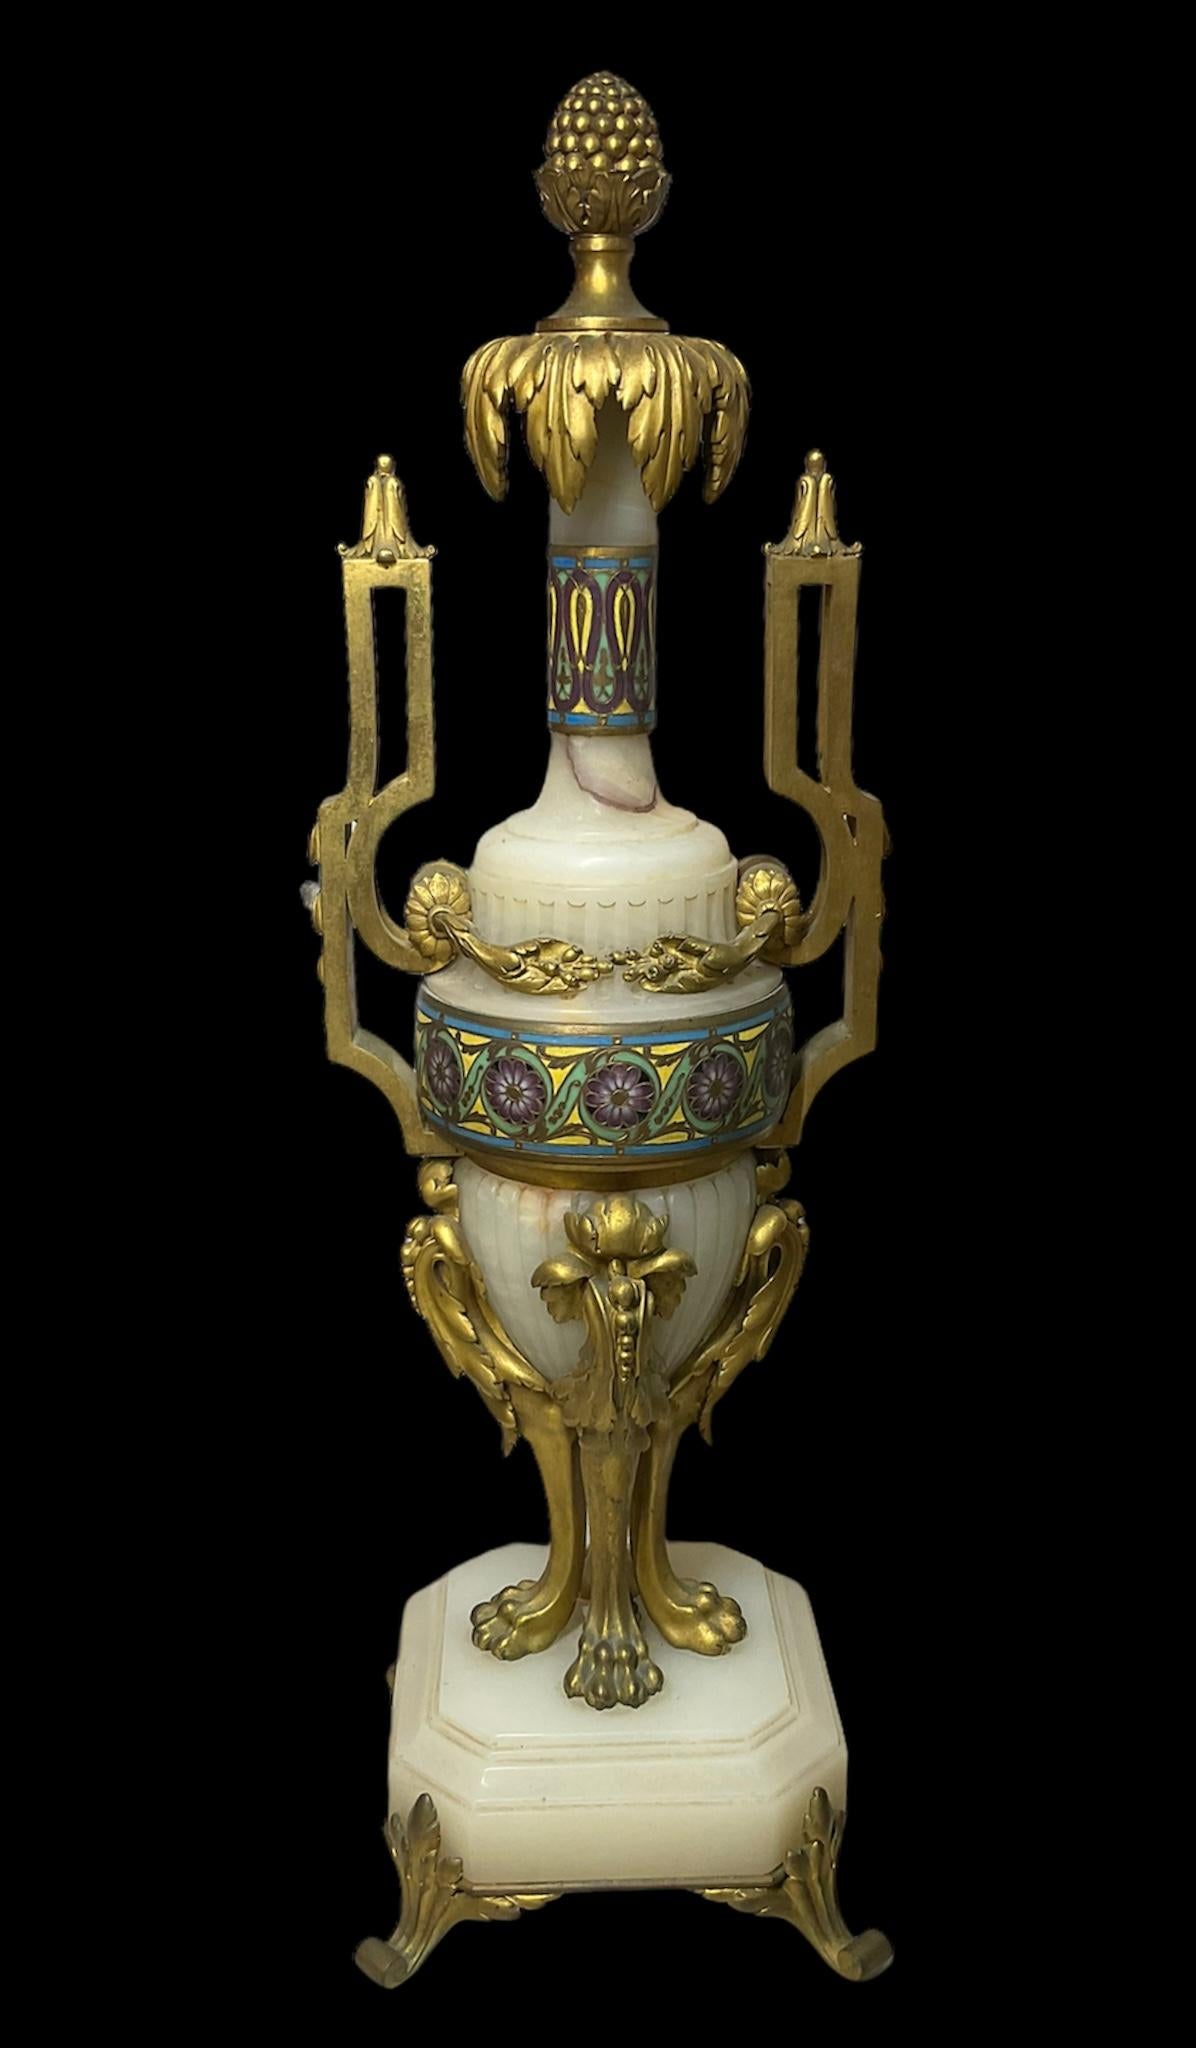 Il s'agit d'un ensemble de garnitures en onyx champlevé montées en bronze doré de Ferdinand Barbedienne. Il se compose de deux urnes et d'un grand vase/jardinière ovale. Le vase est orné d'une chaîne de perles dorées dans son bord et de ses poignées